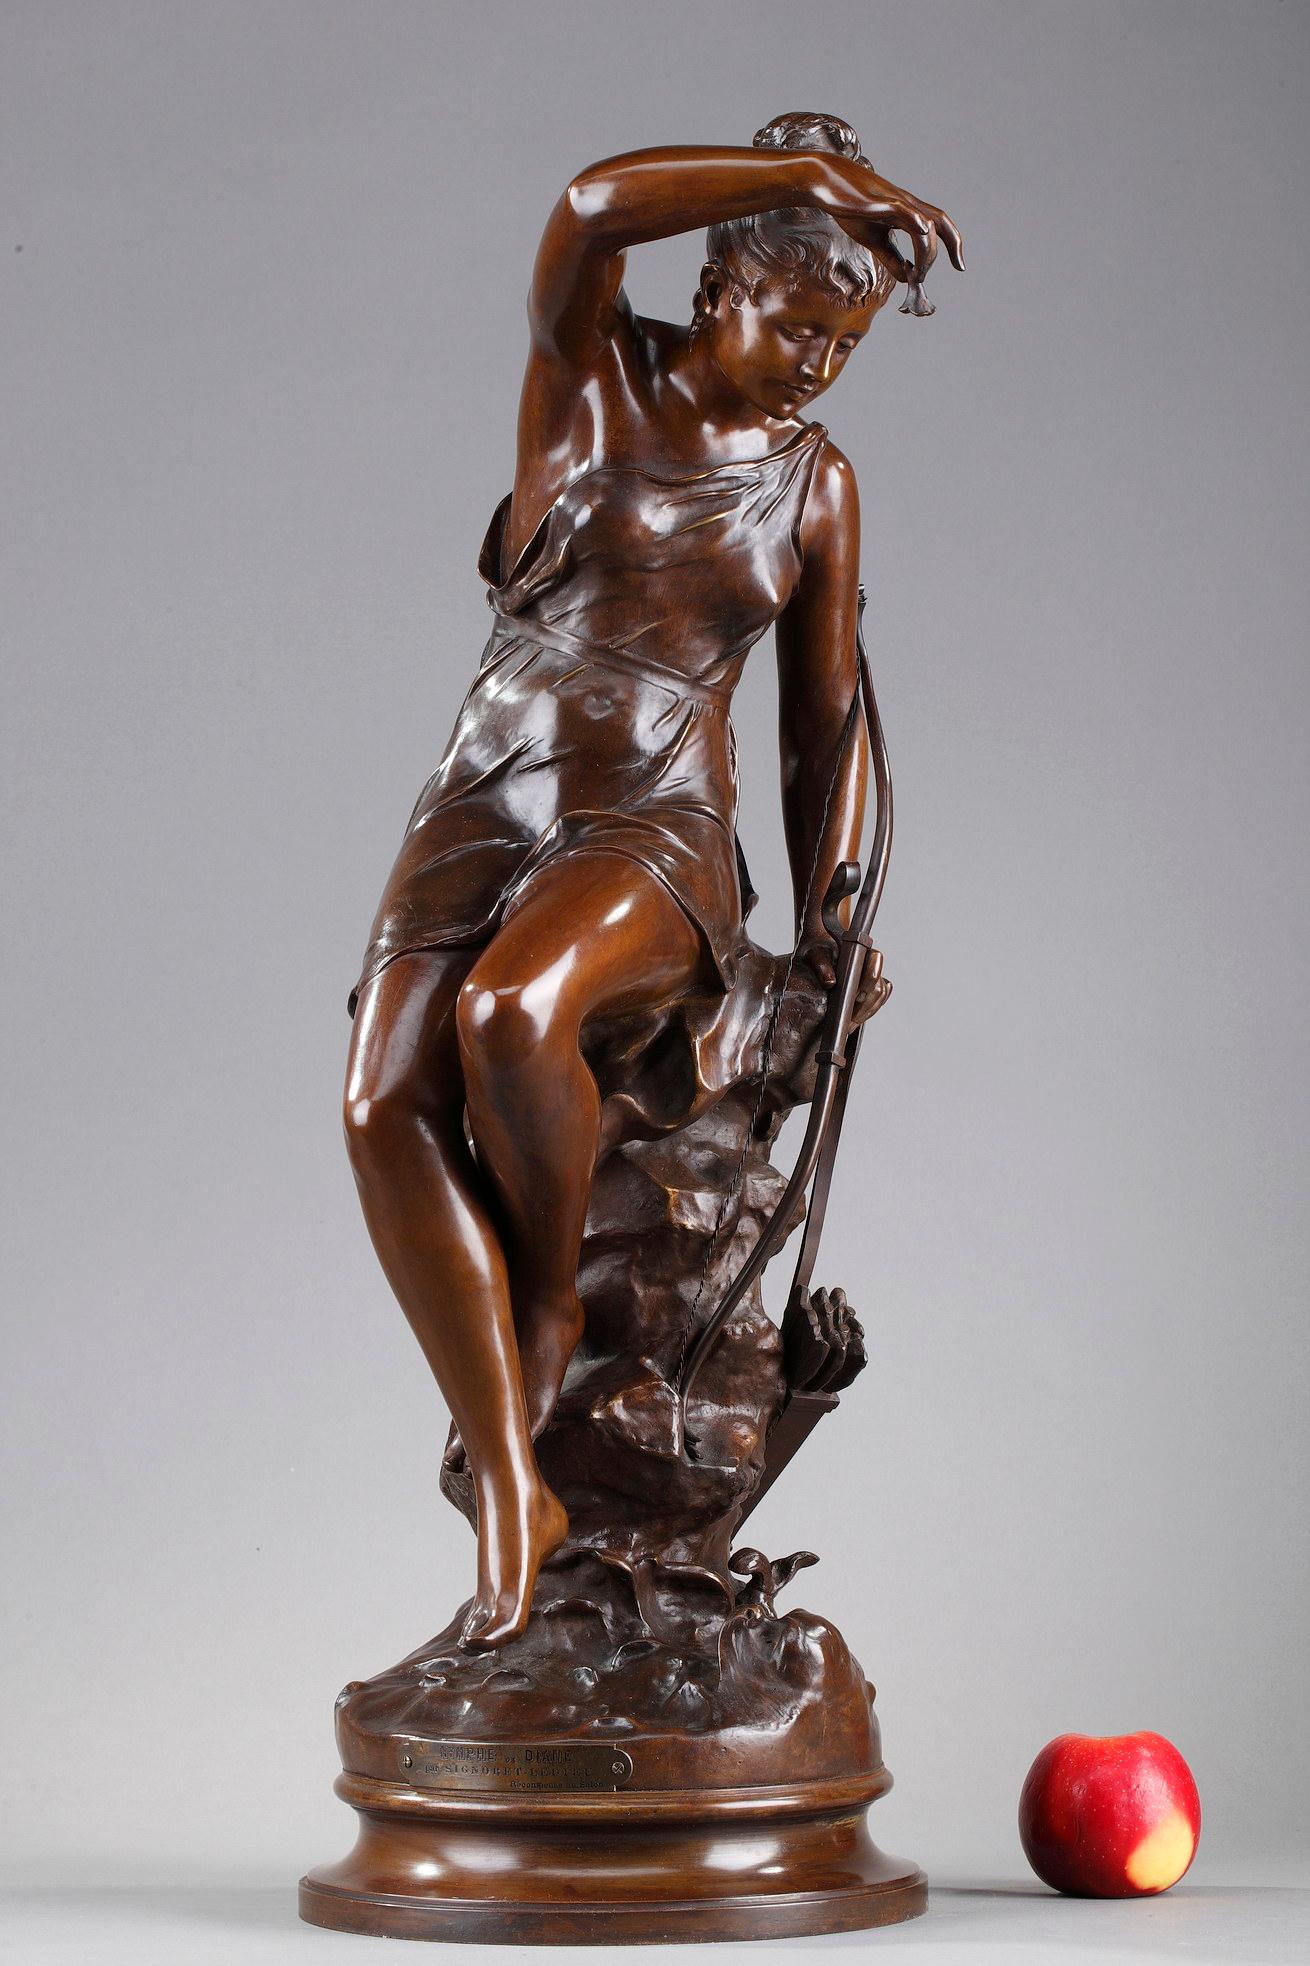 Belle statue en bronze patiné représentant Diane, déesse de la chasse, également appelée Nymphe de Diane, d'après l'œuvre de Lucie Signoret-Ledieu. Elle représente la déesse assise sur un tronc tenant son arc dans une main et de l'autre une fleur en